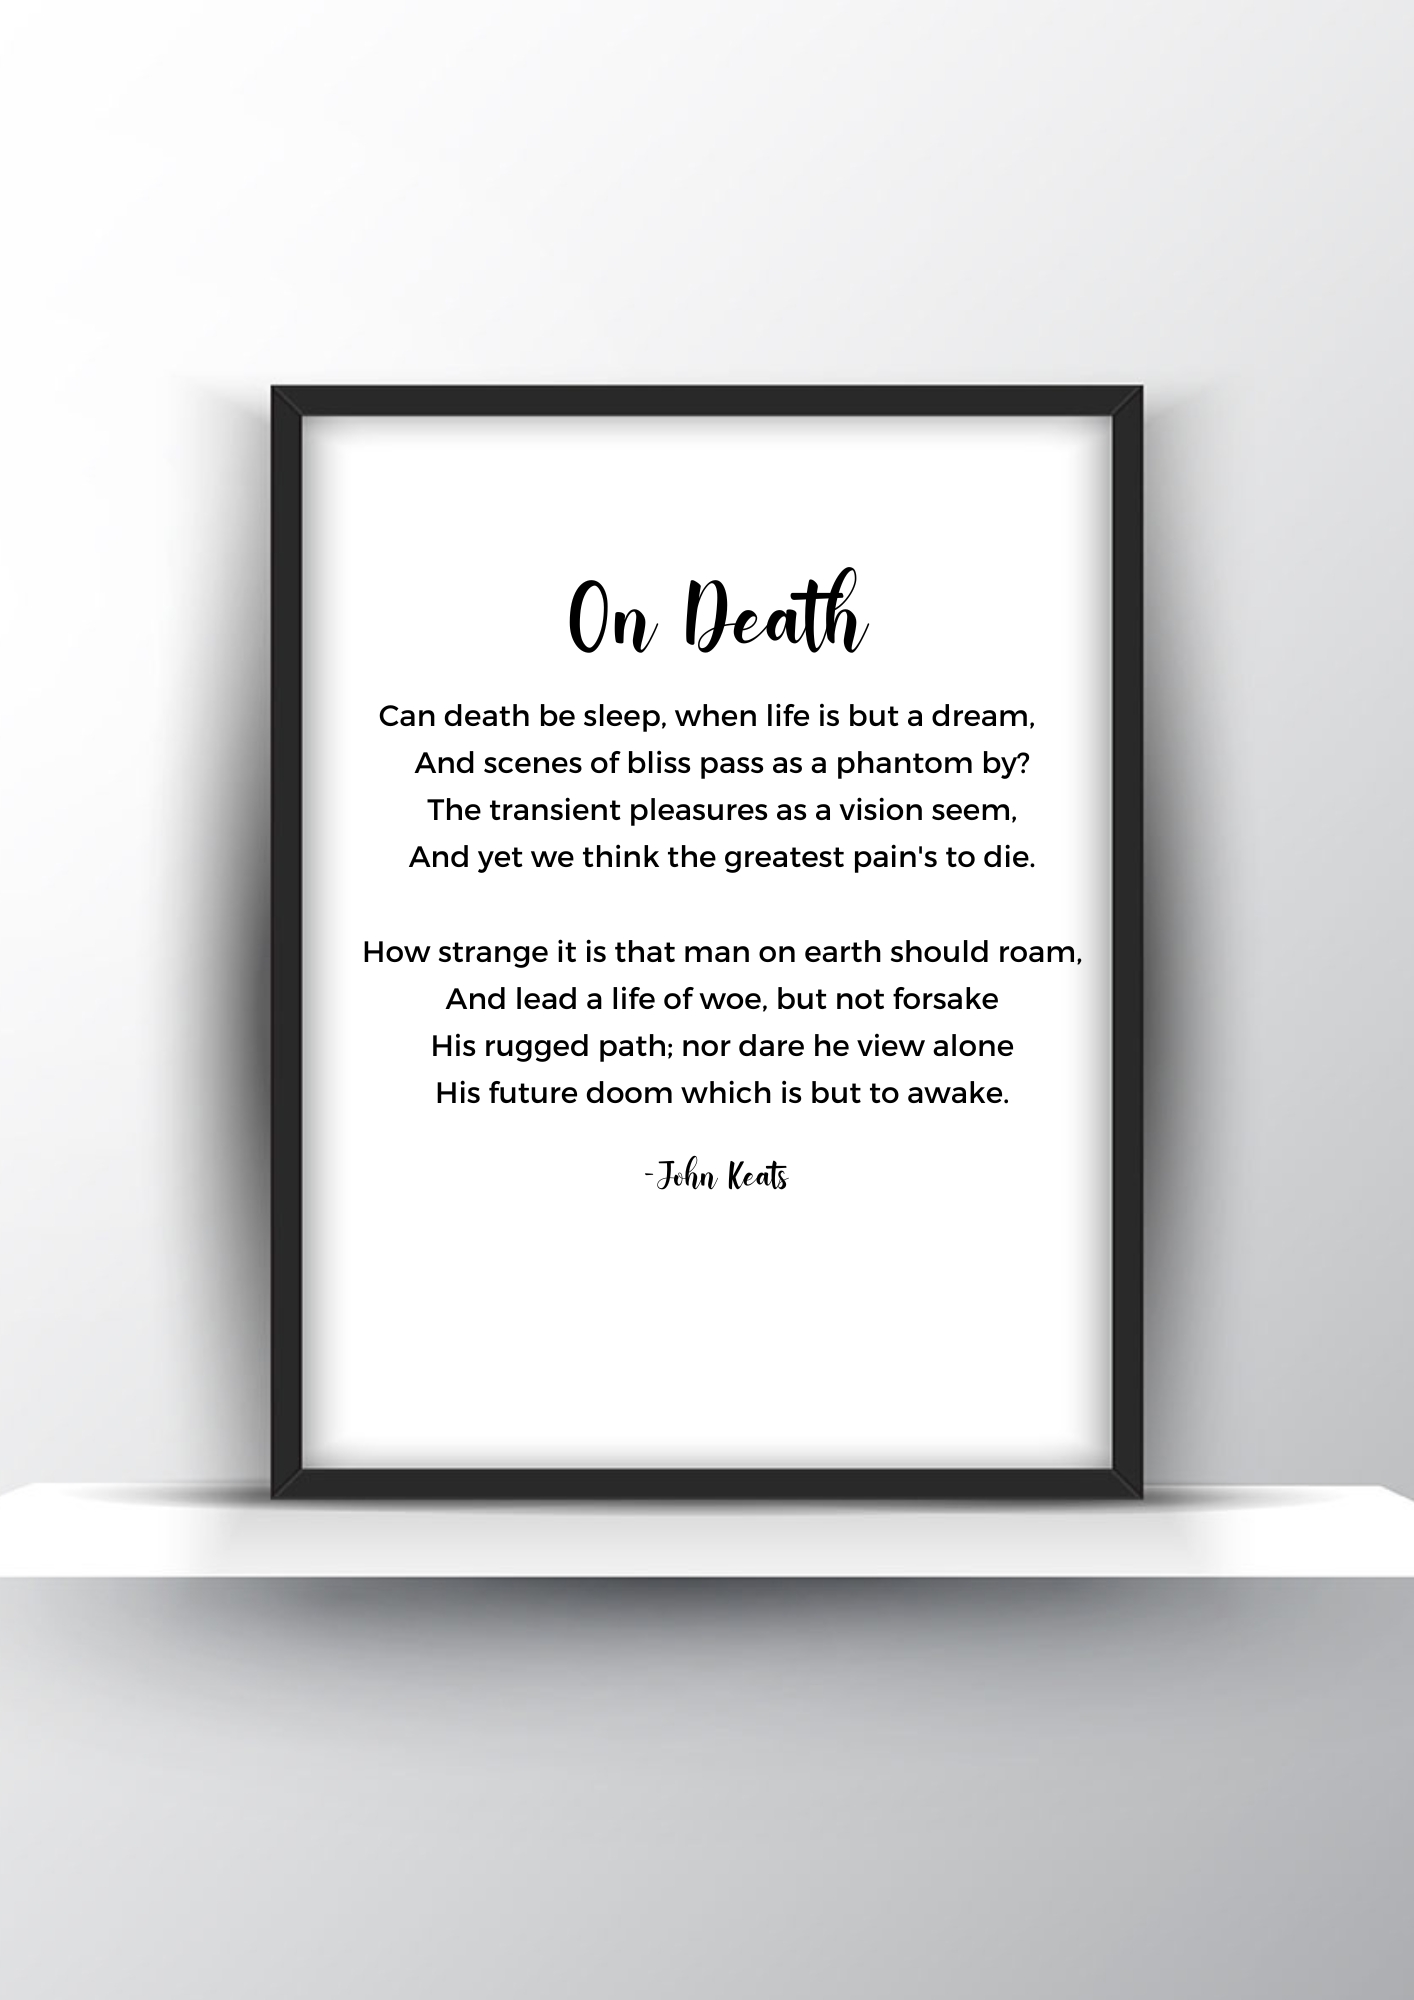 On Death Poem by John Keats